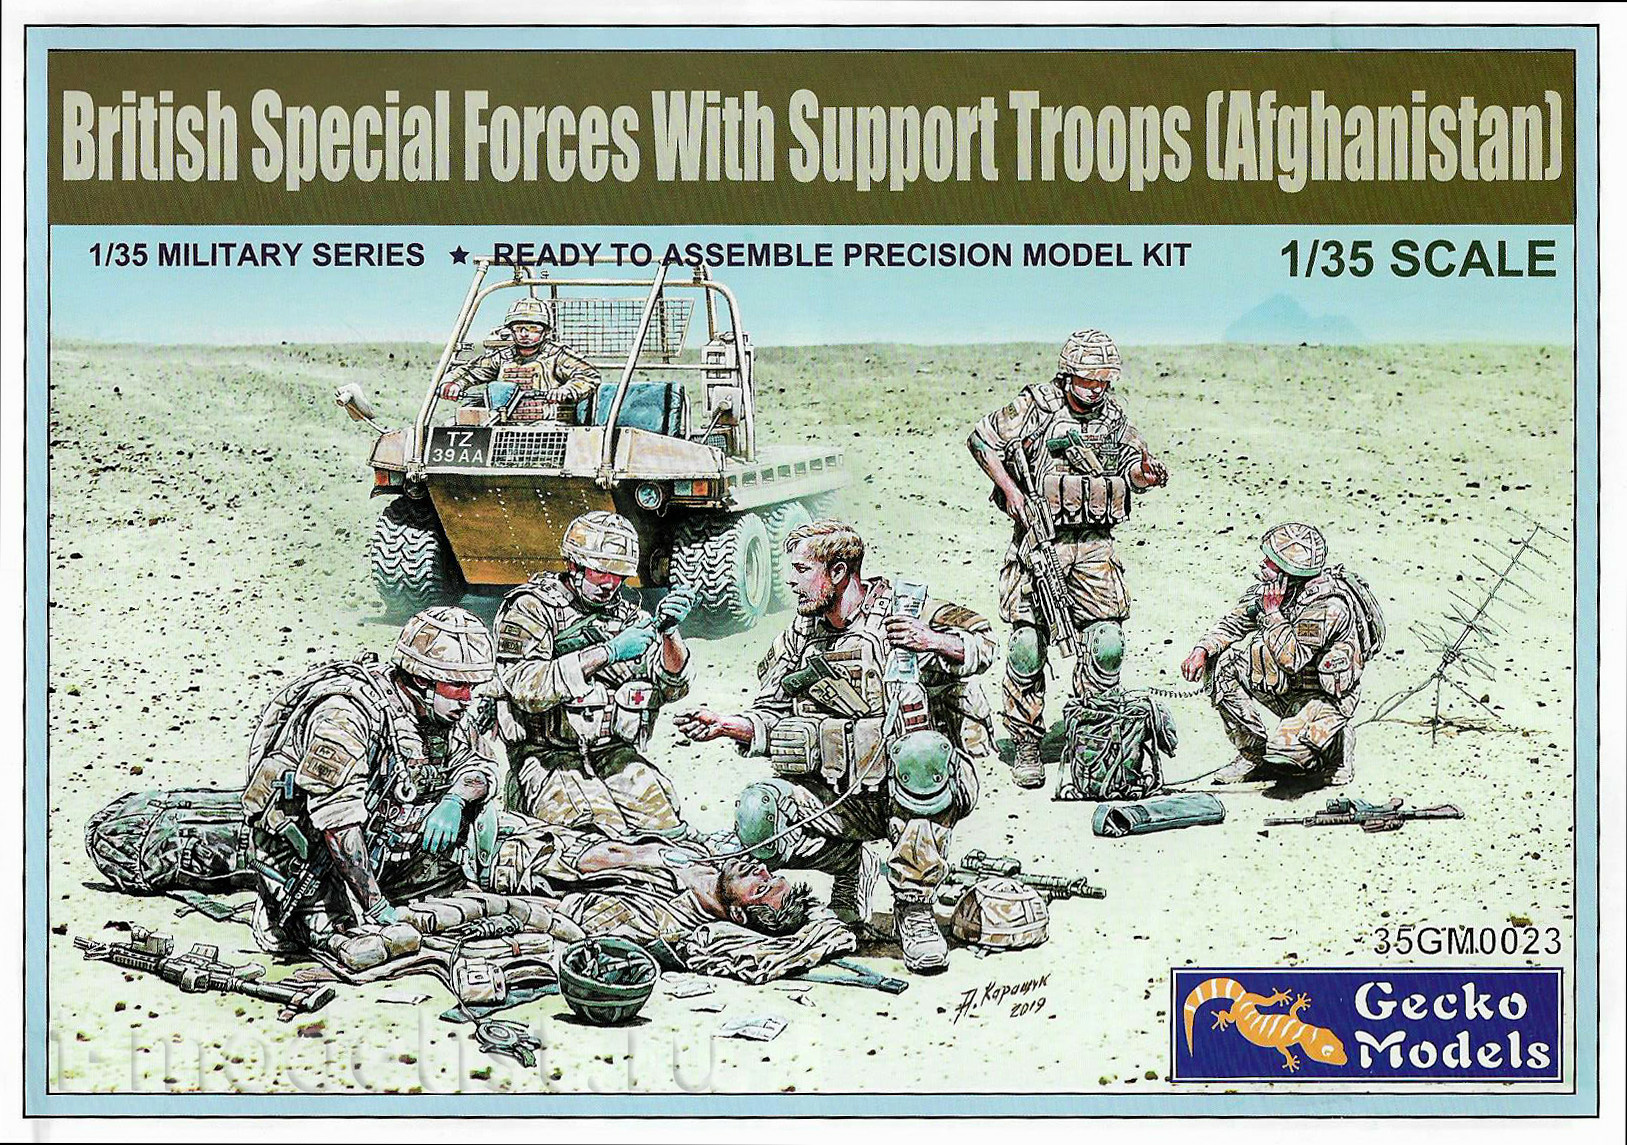 Support troop